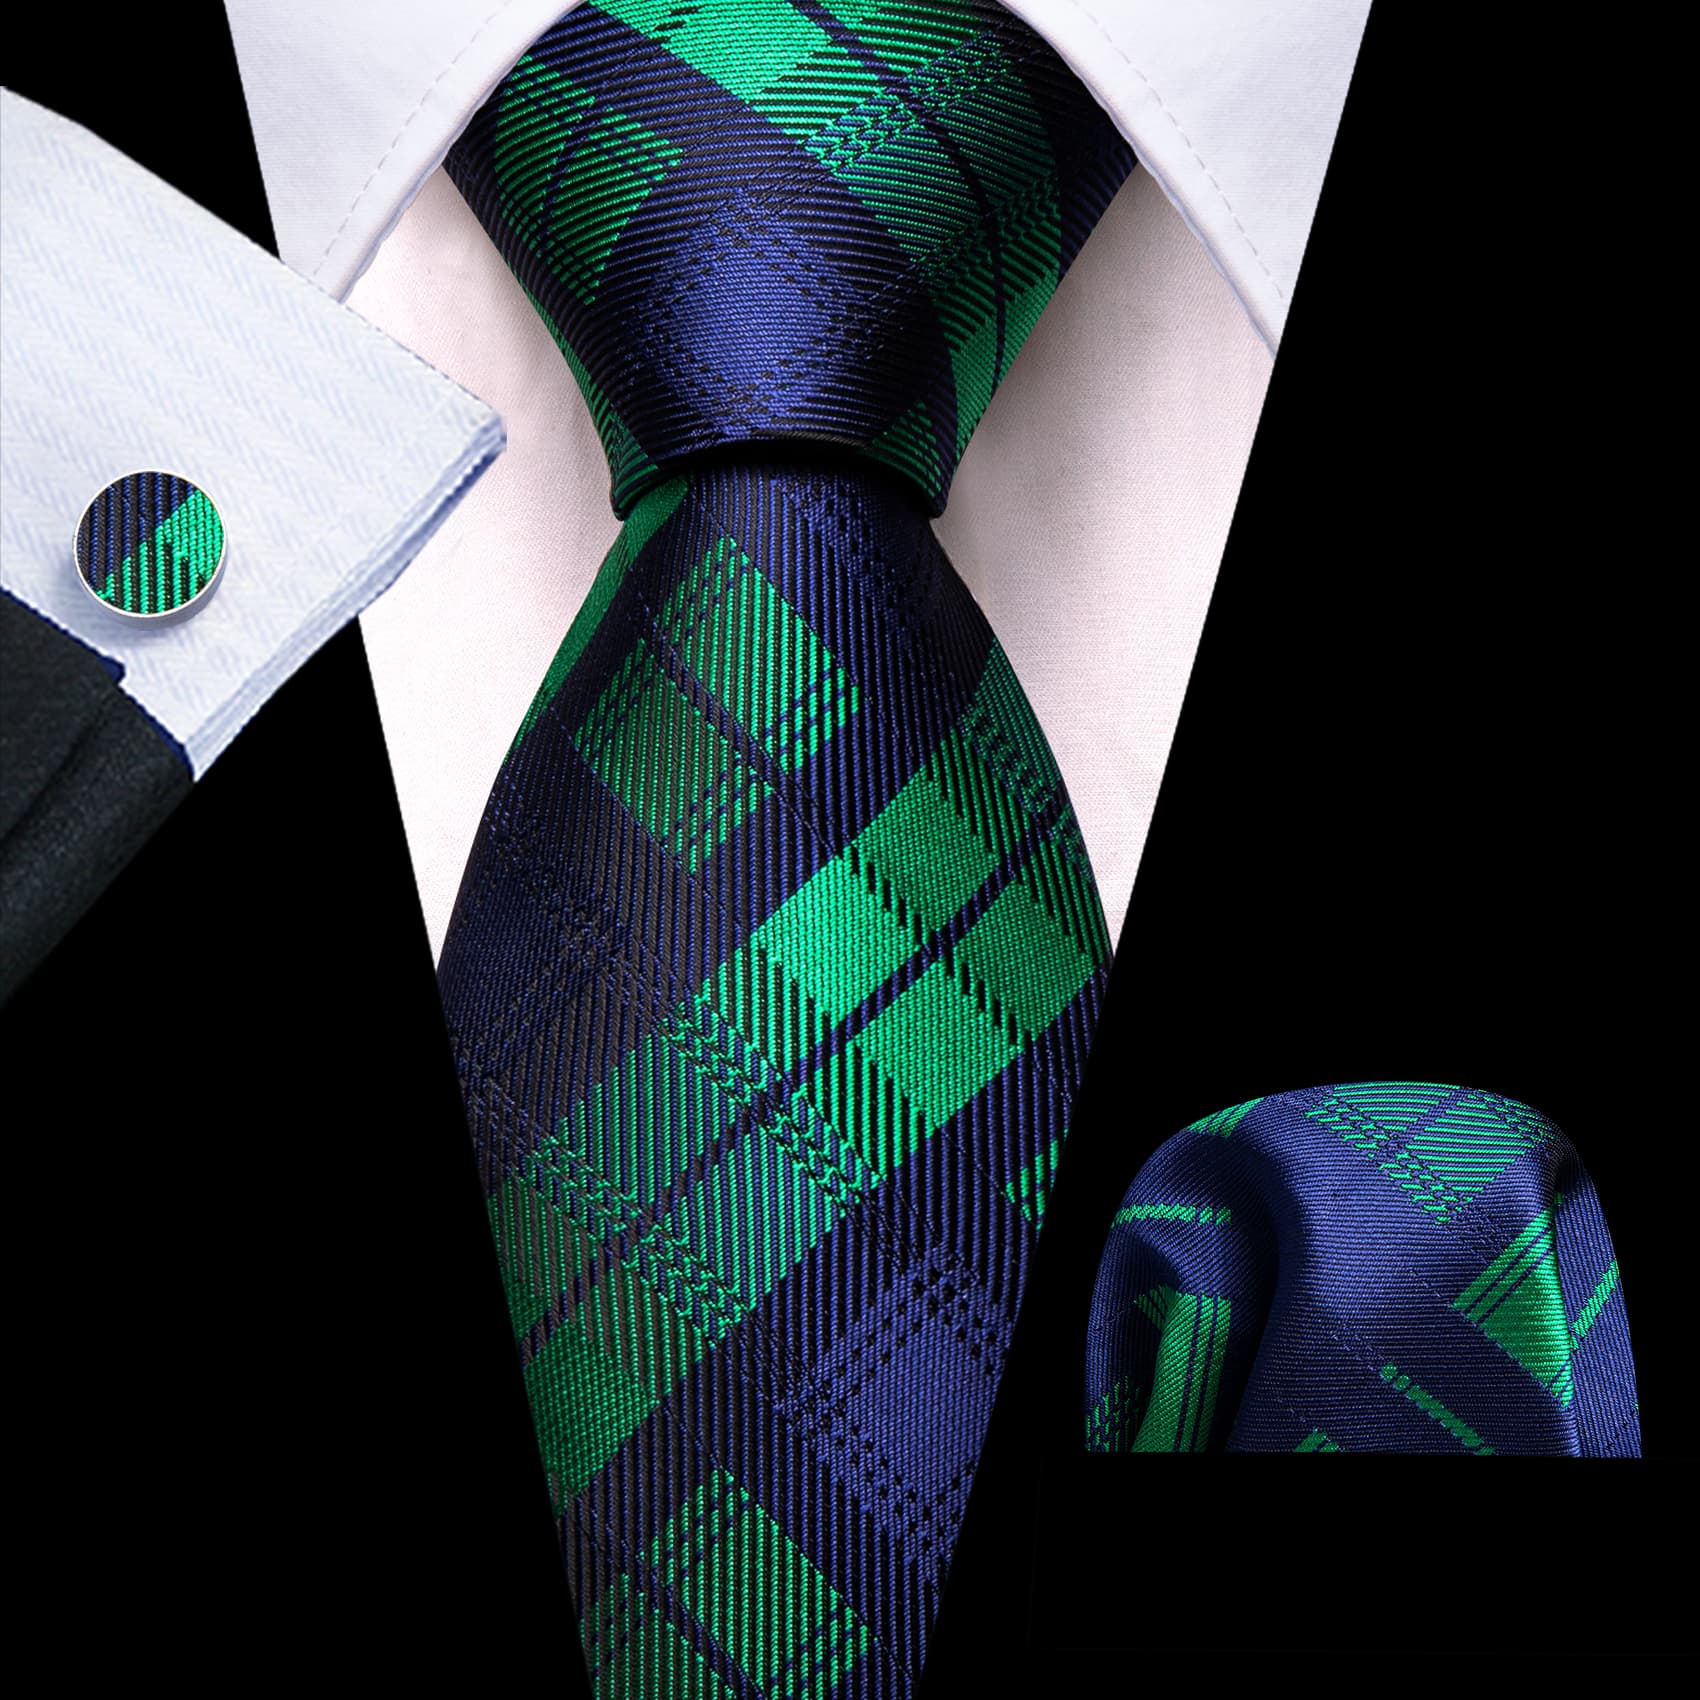 Tie Black Blue Green Checkered Necktie Hanky Cufflinks Set